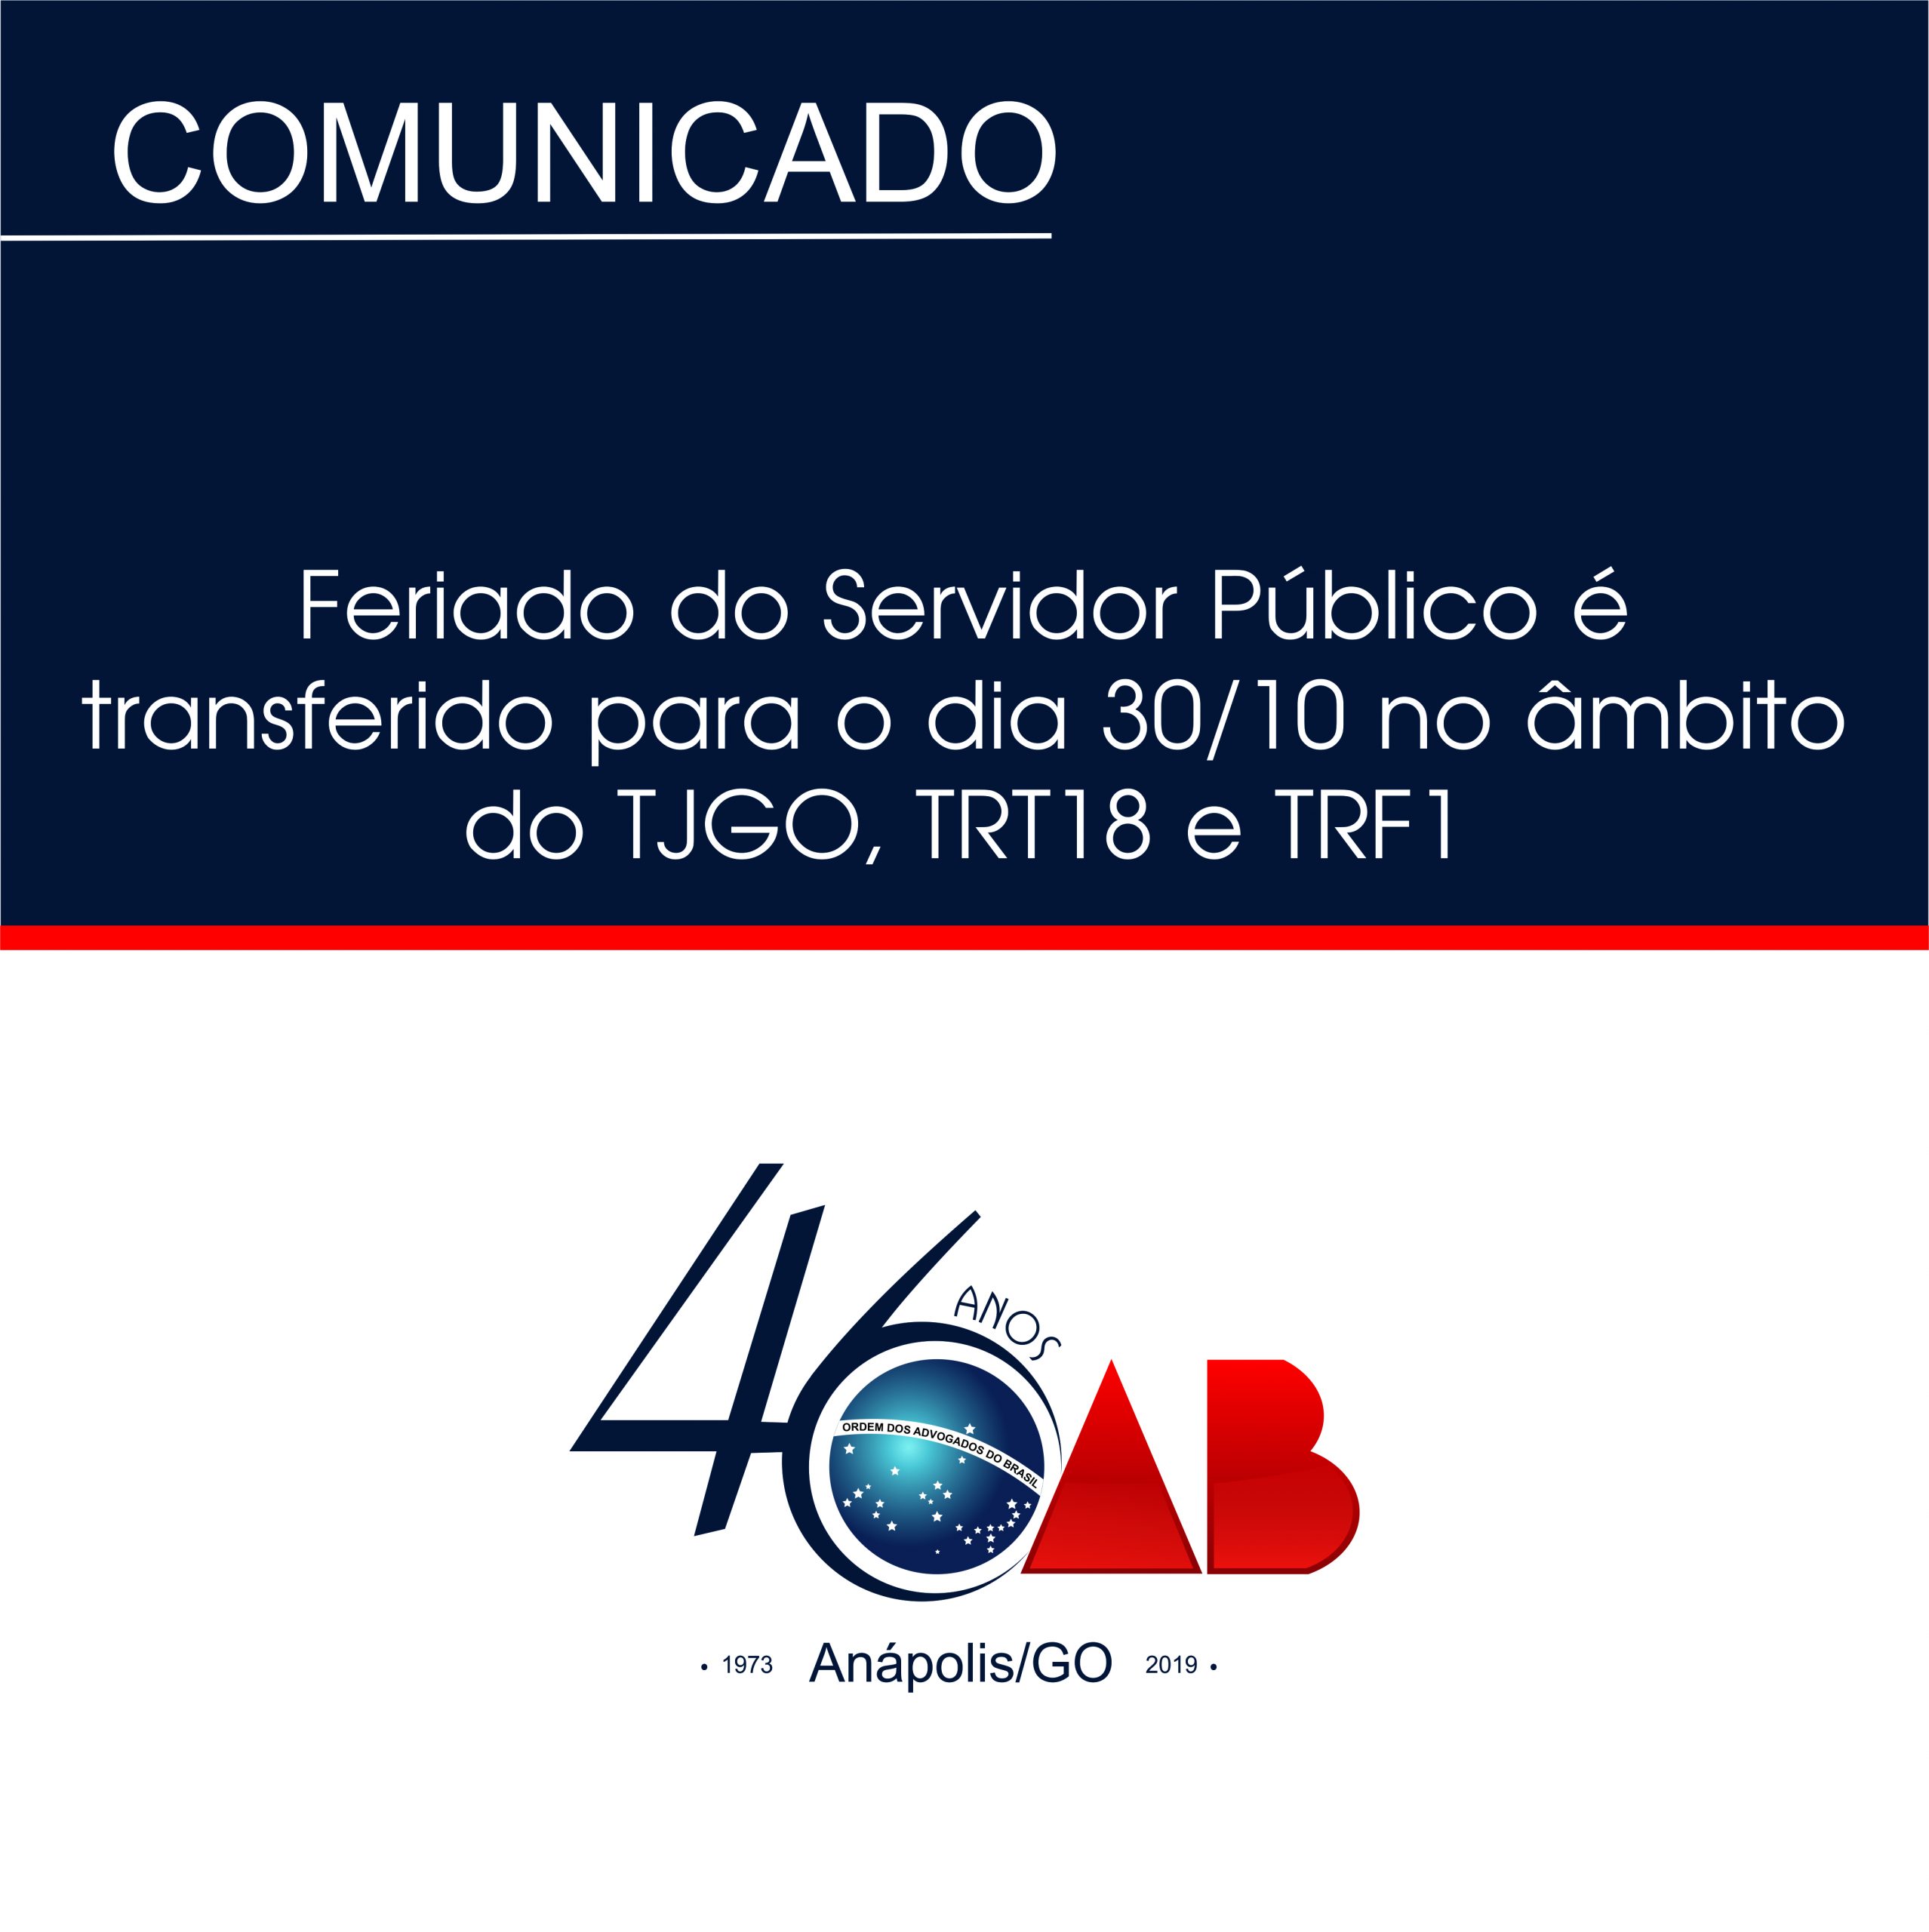 Feriado do Servidor Público é transferido para o dia 30/10 no âmbito do TJGO, TRT18 e TRF1